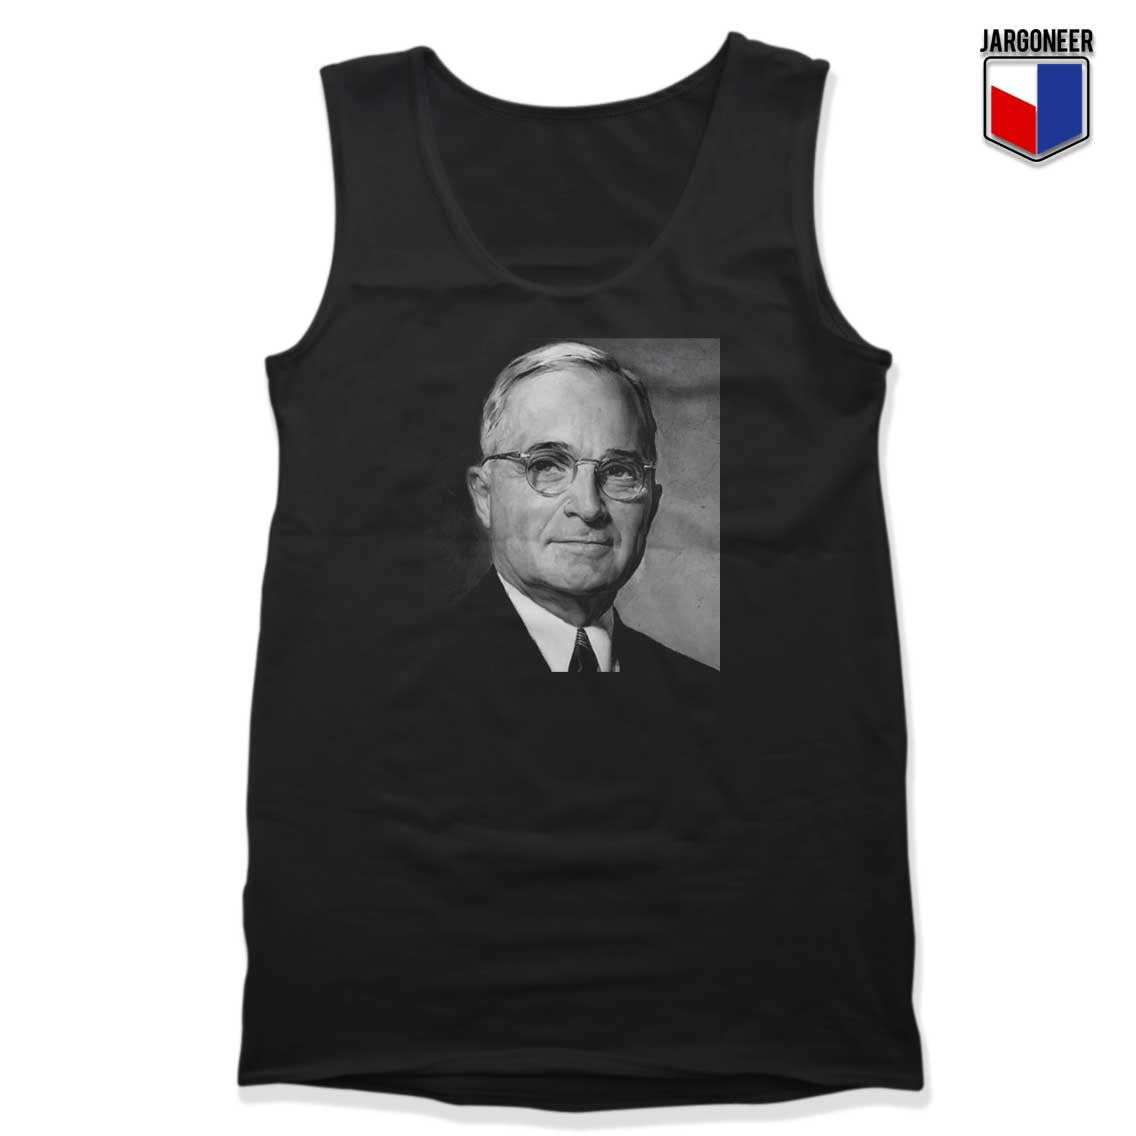 Harry S Truman President Tank Top - Shop Unique Graphic Cool Shirt Designs